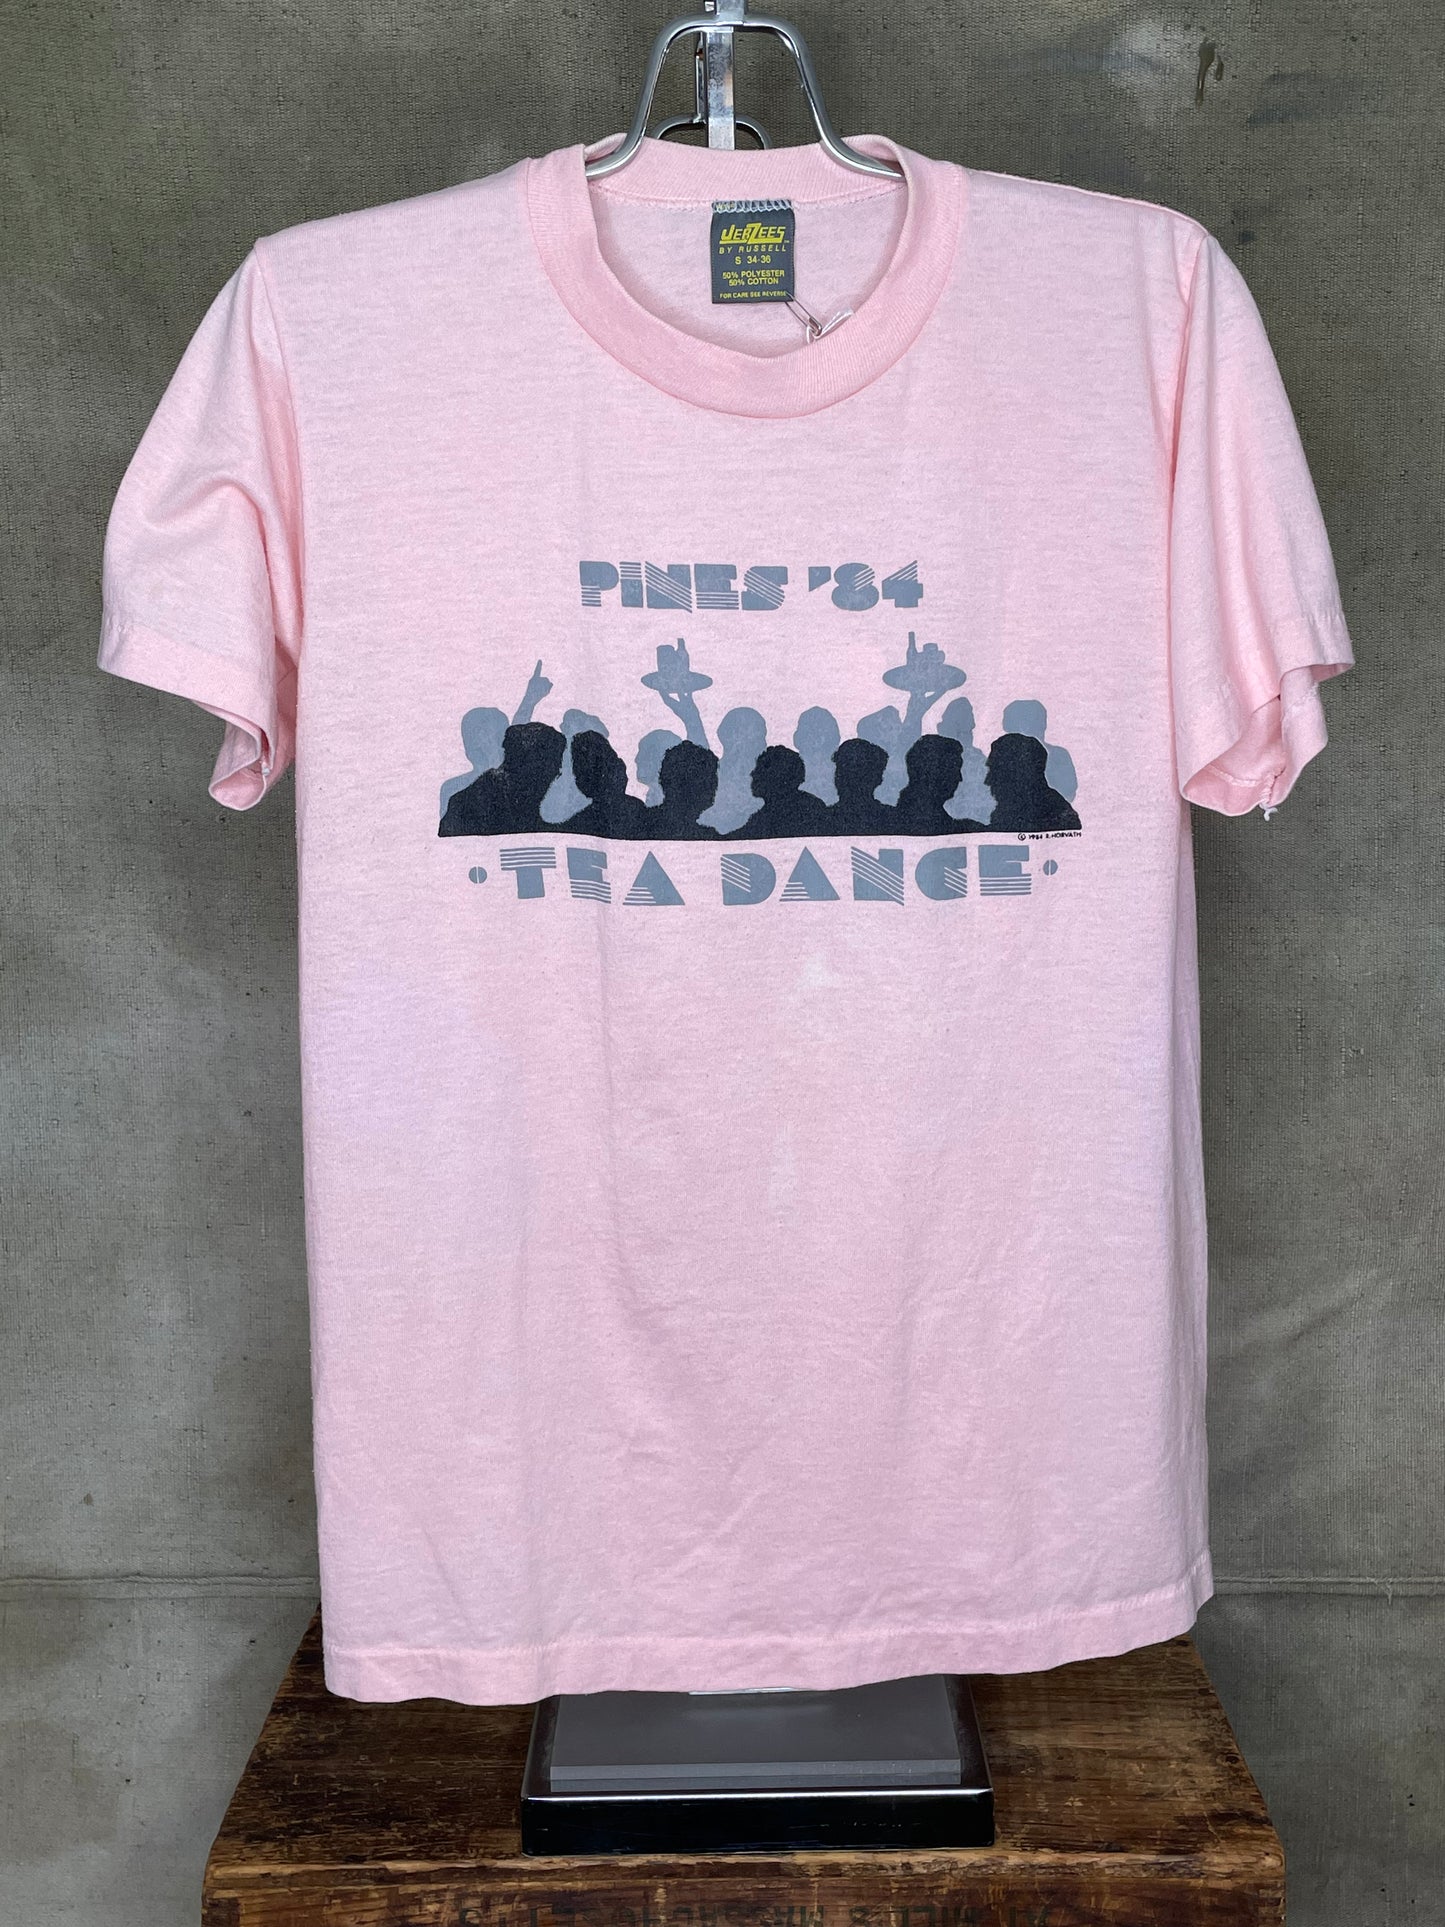 Vintage XS/S 80s Pines 84 Tea Dance Single Stitch Shirt